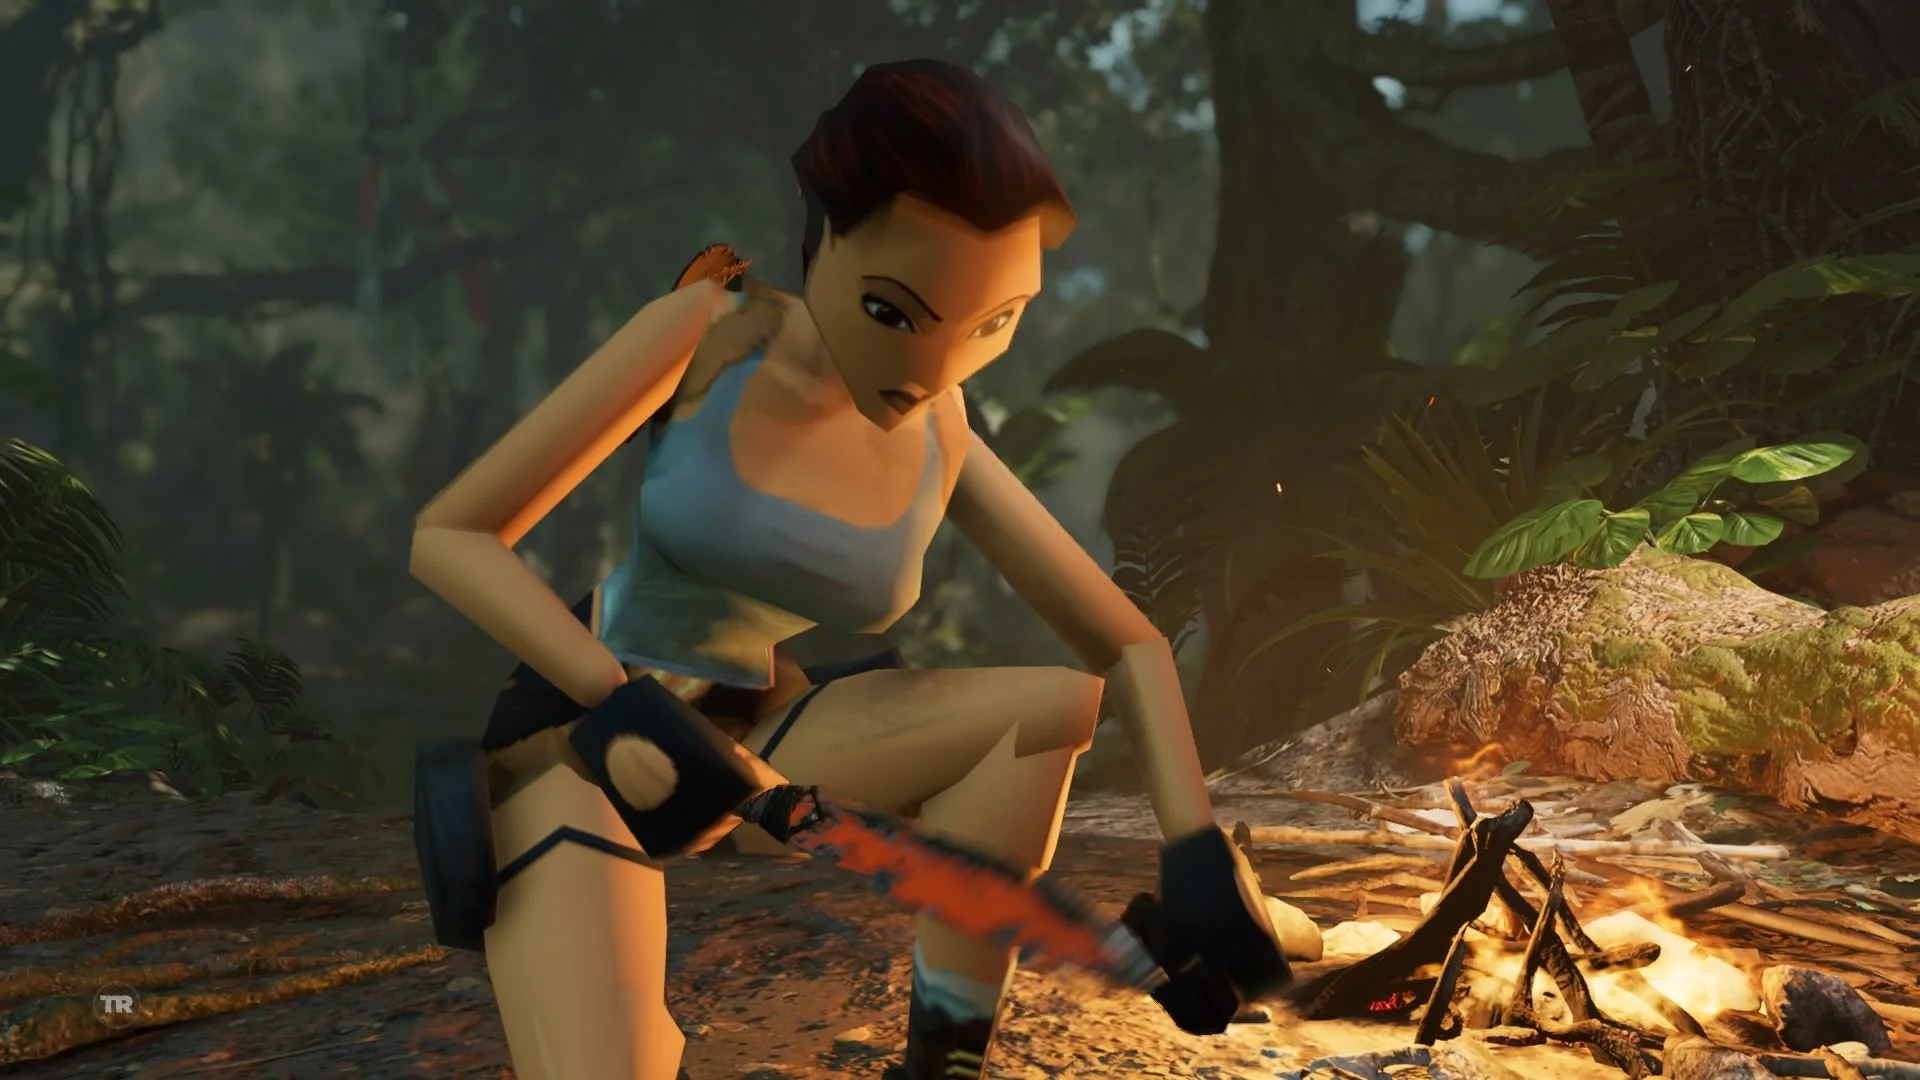 За прошедшие 22 года Лара Крофт прошла впечатляющий путь. И выход Shadow of the Tomb Raider, заключительной части уже второй перезапущенной трилогии о легендарной расхитительнице гробниц, - отличный повод для того, чтобы сравнить то, с чего начиналась ее история, с тем, к чему она пришла. 